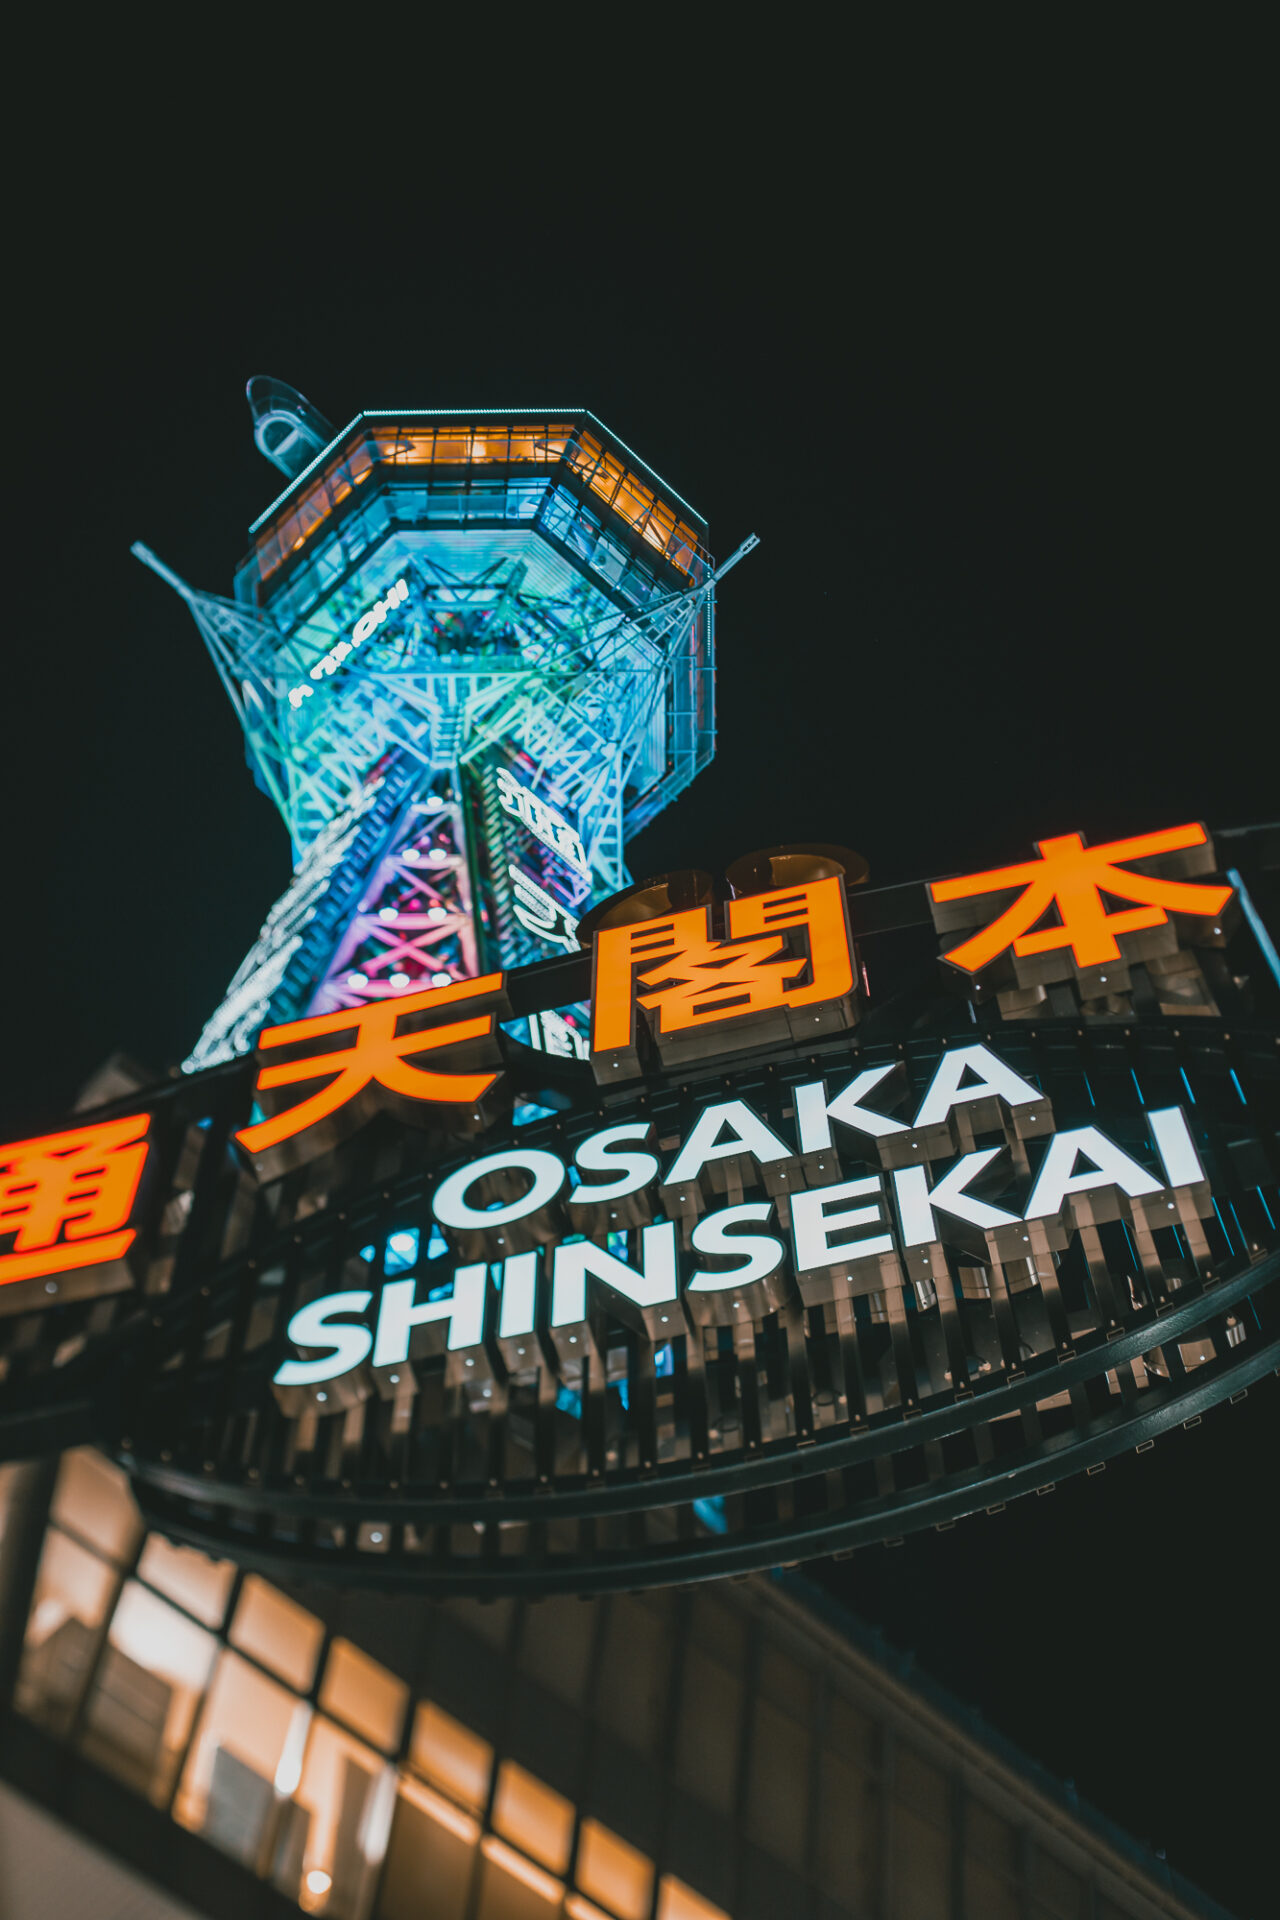 Shinsekai Tower